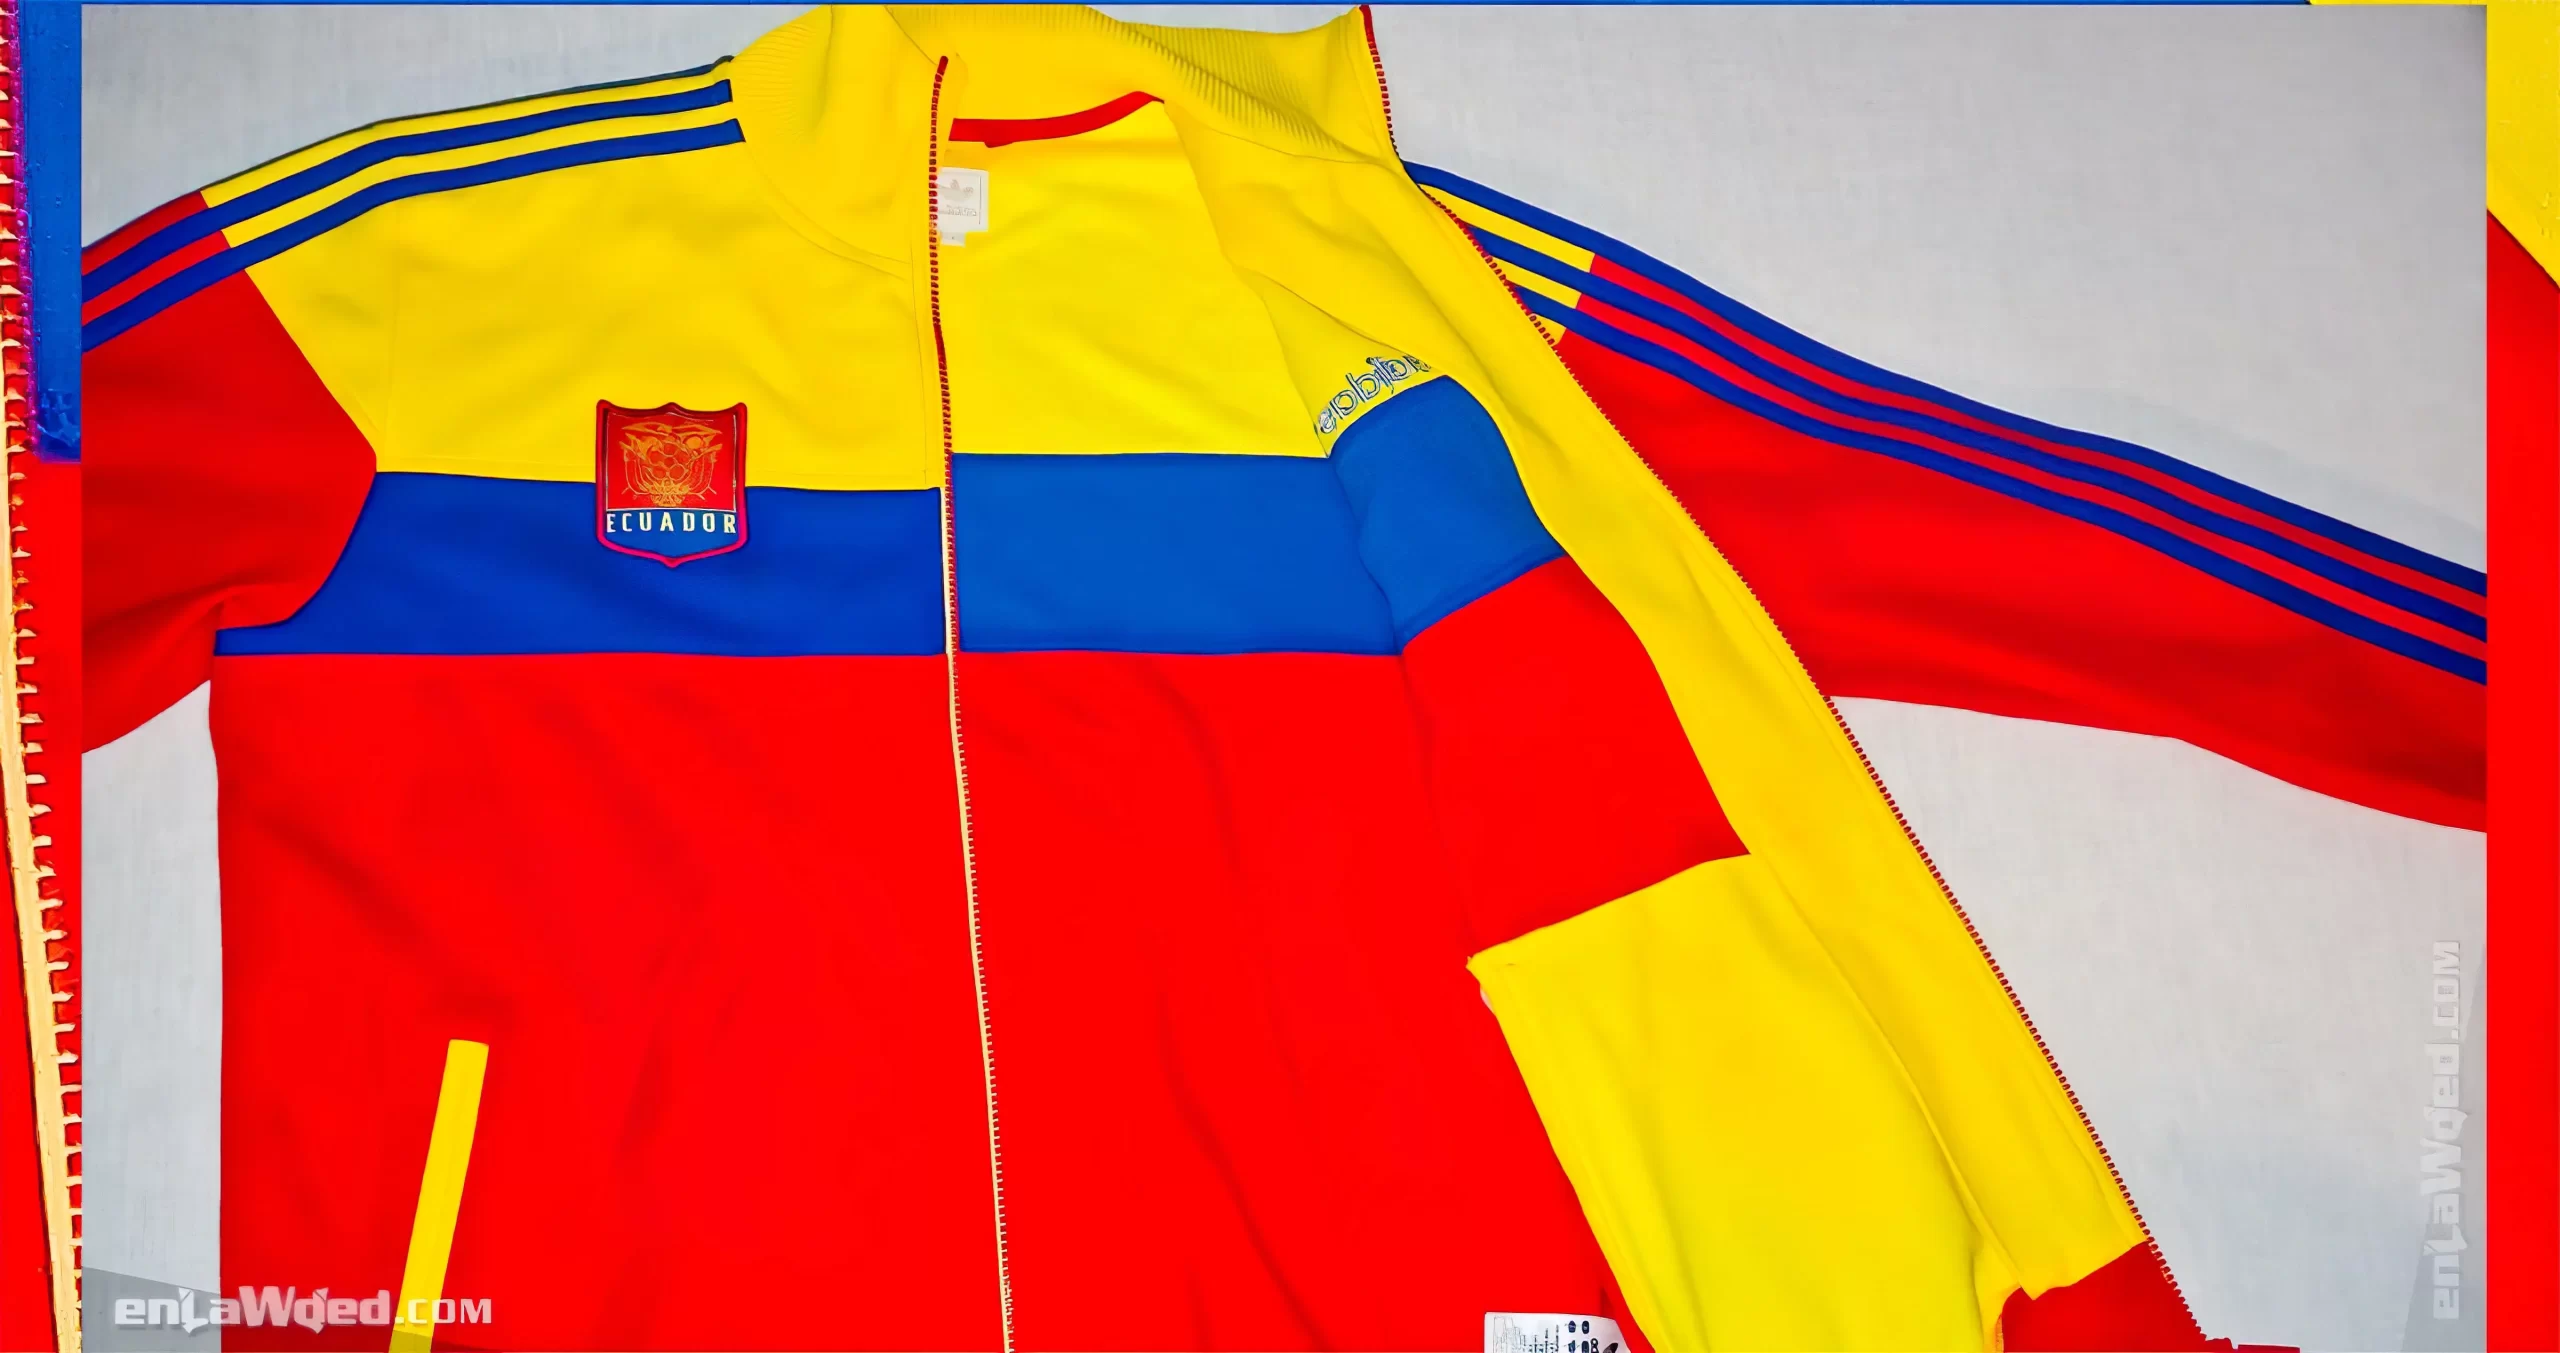 Men’s 2006 Ecuador Track Top by Adidas Originals: Superb (EnLawded.com file #lmchk90177ip2y121967kg9st)